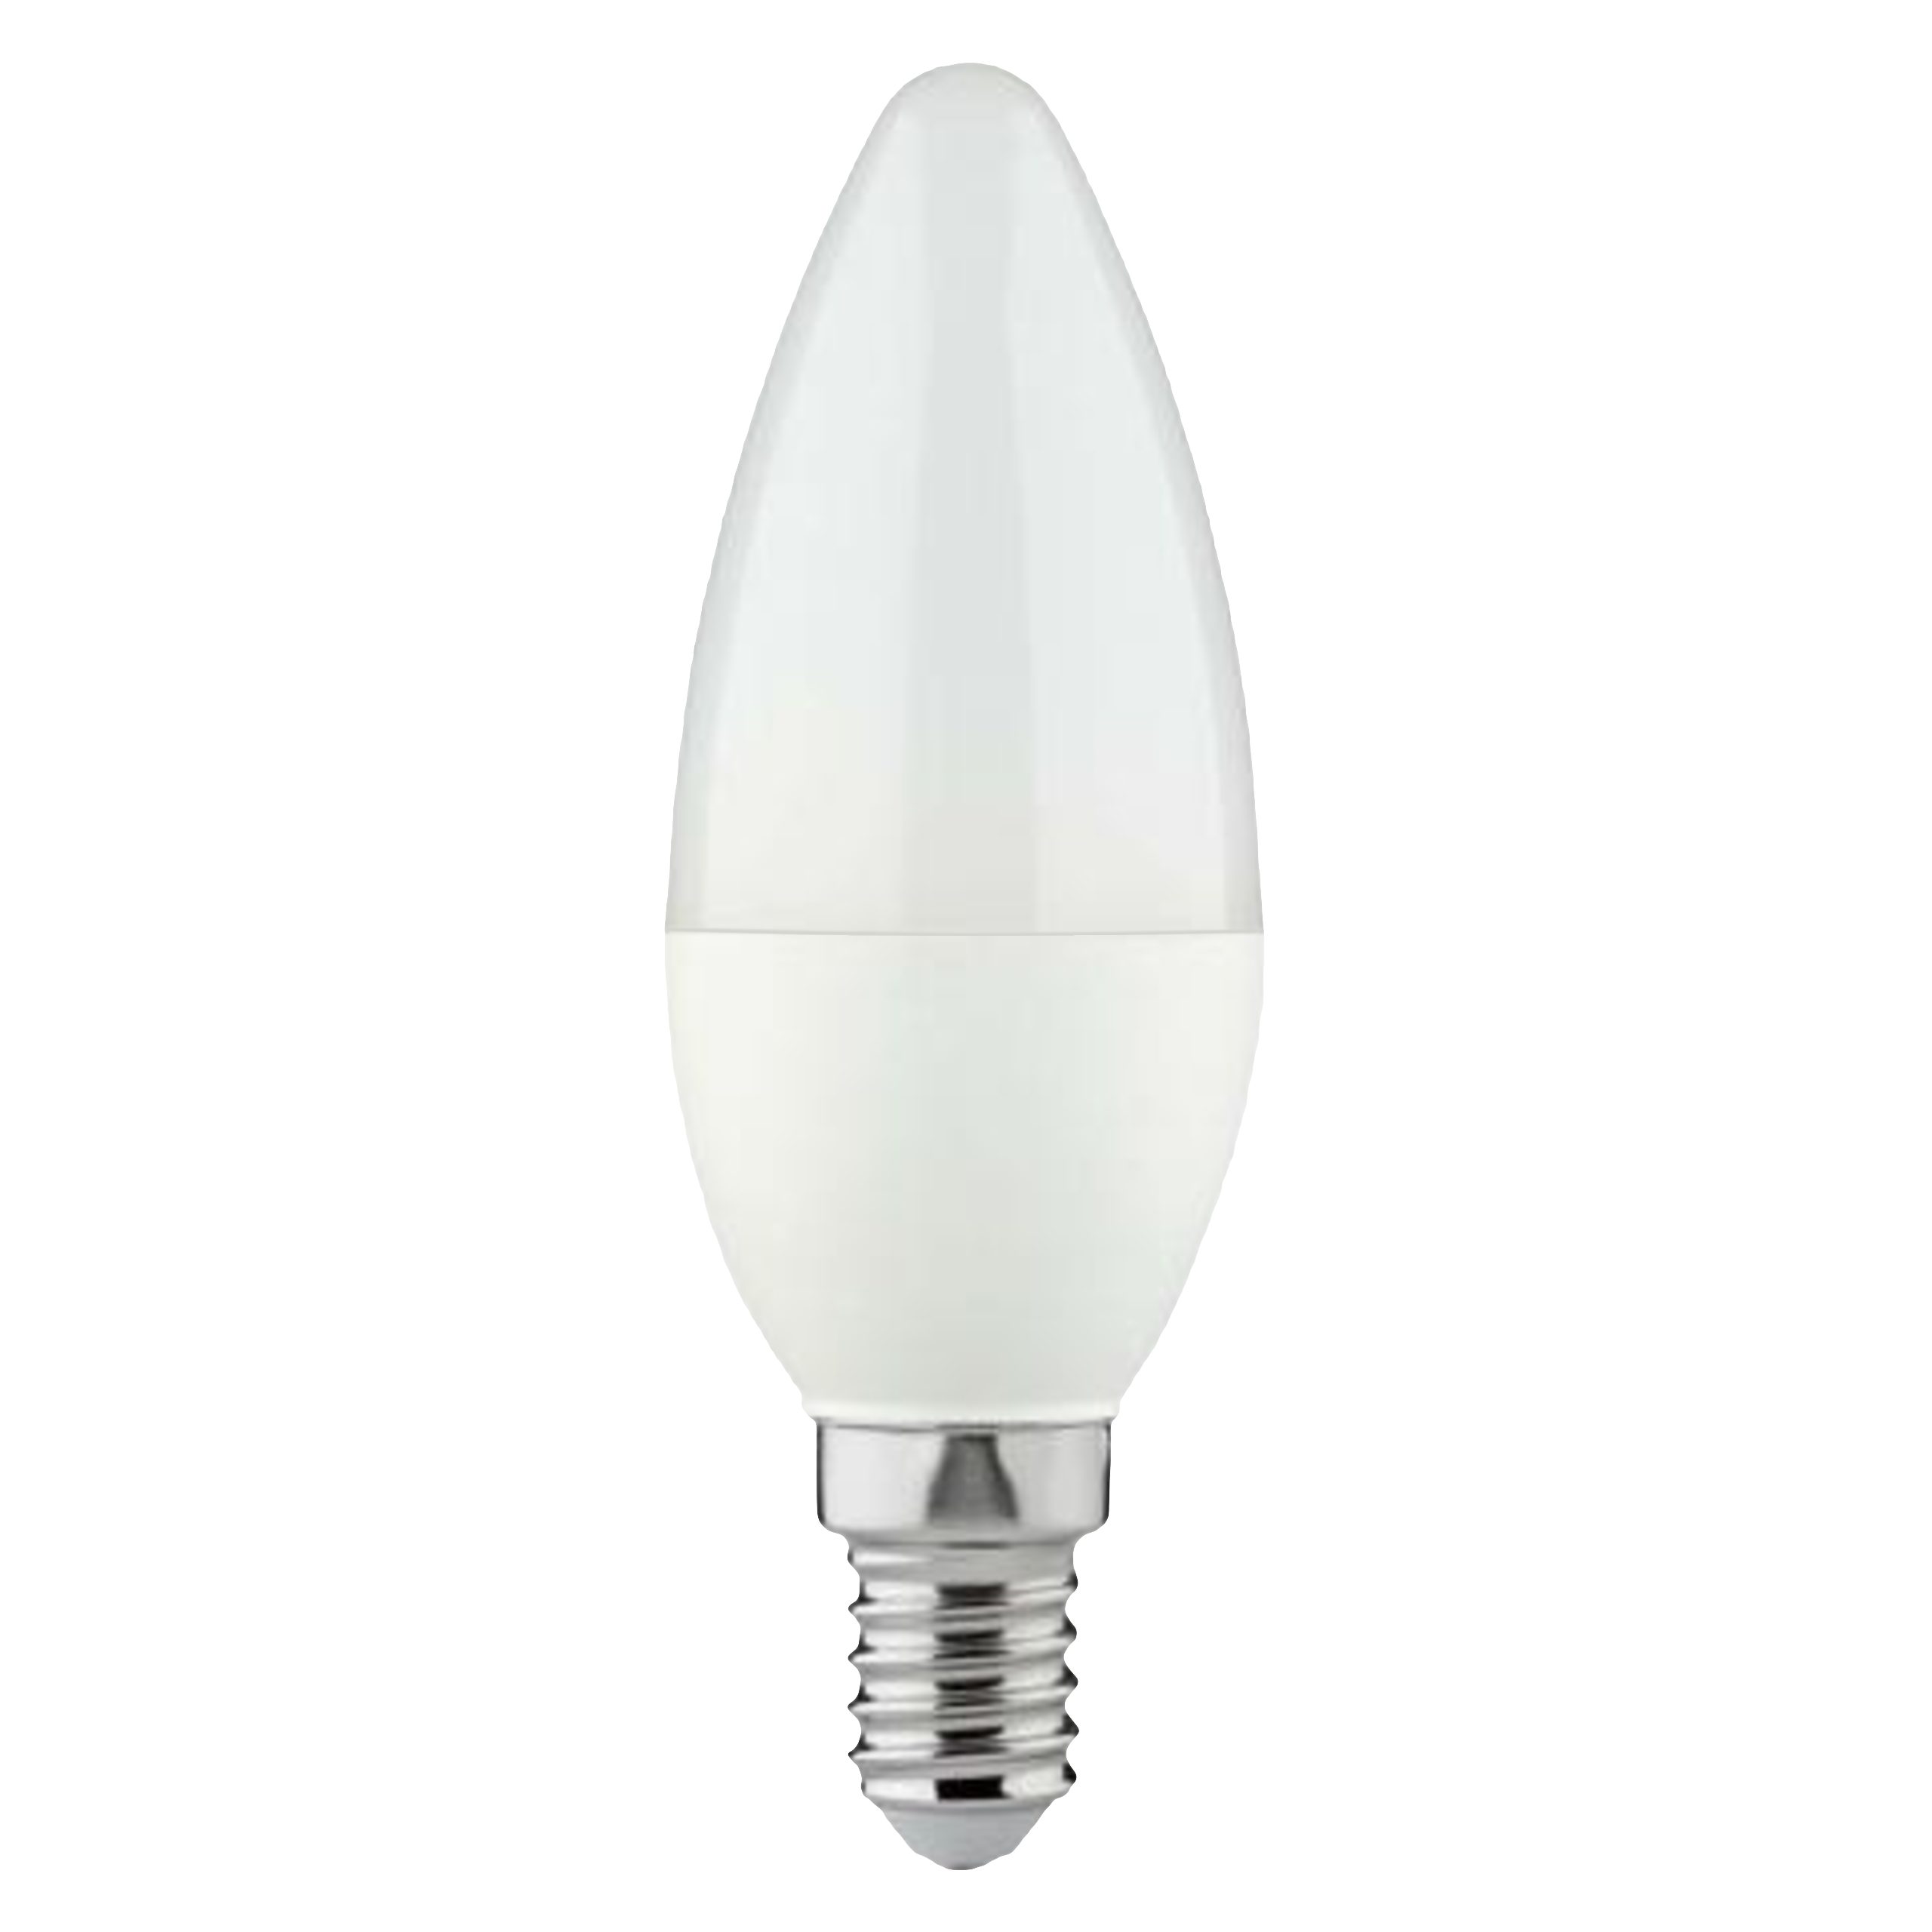 LED's light Basic LED-Leuchtmittel 0620302 LED Kerze, E14, E14 4.5W warmweiß Opal C35